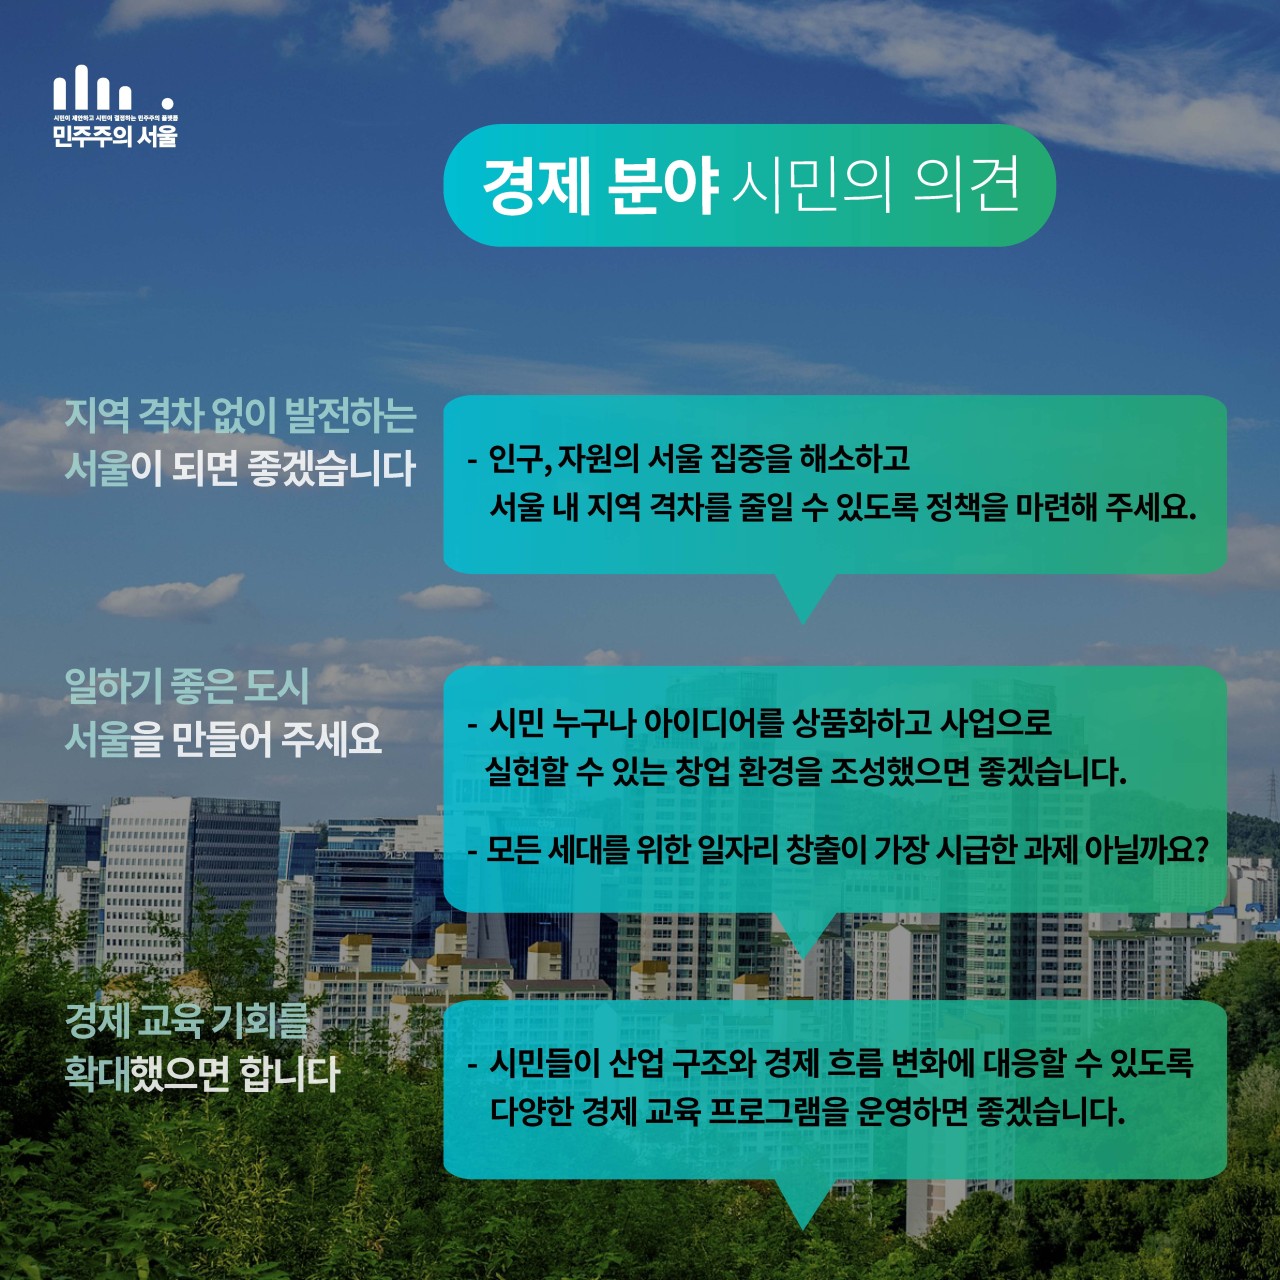 민주주의 서울 경제 분야 시민의 의견 지역 격차 없이 발전하는 서울이 되면 좋겠습니다. - 인구,자원의 서울 집중을 해소하고 서울 내 지역 격차를 줄일 수 있도록 정책을 마련해 주세요. - 일하기 좋은 도시 서울을 만들어 주세요 - 시민 누구나 아이디어를 상품화하고 사업으로 실현할 수 있는 창업 환경을 조성했으면 좋겠습니다. - 모든 세대를 위한 일자리 창출이 가장 시급한 과제 아닐까요? 경제 교육 기회를 확대했으면 합니다. - 시민들이 산업 구조와 경제 흐름 변화에 대응할 수 있도록 다양한 경제 교육 프로그램을 운영하면 좋겠습니다.